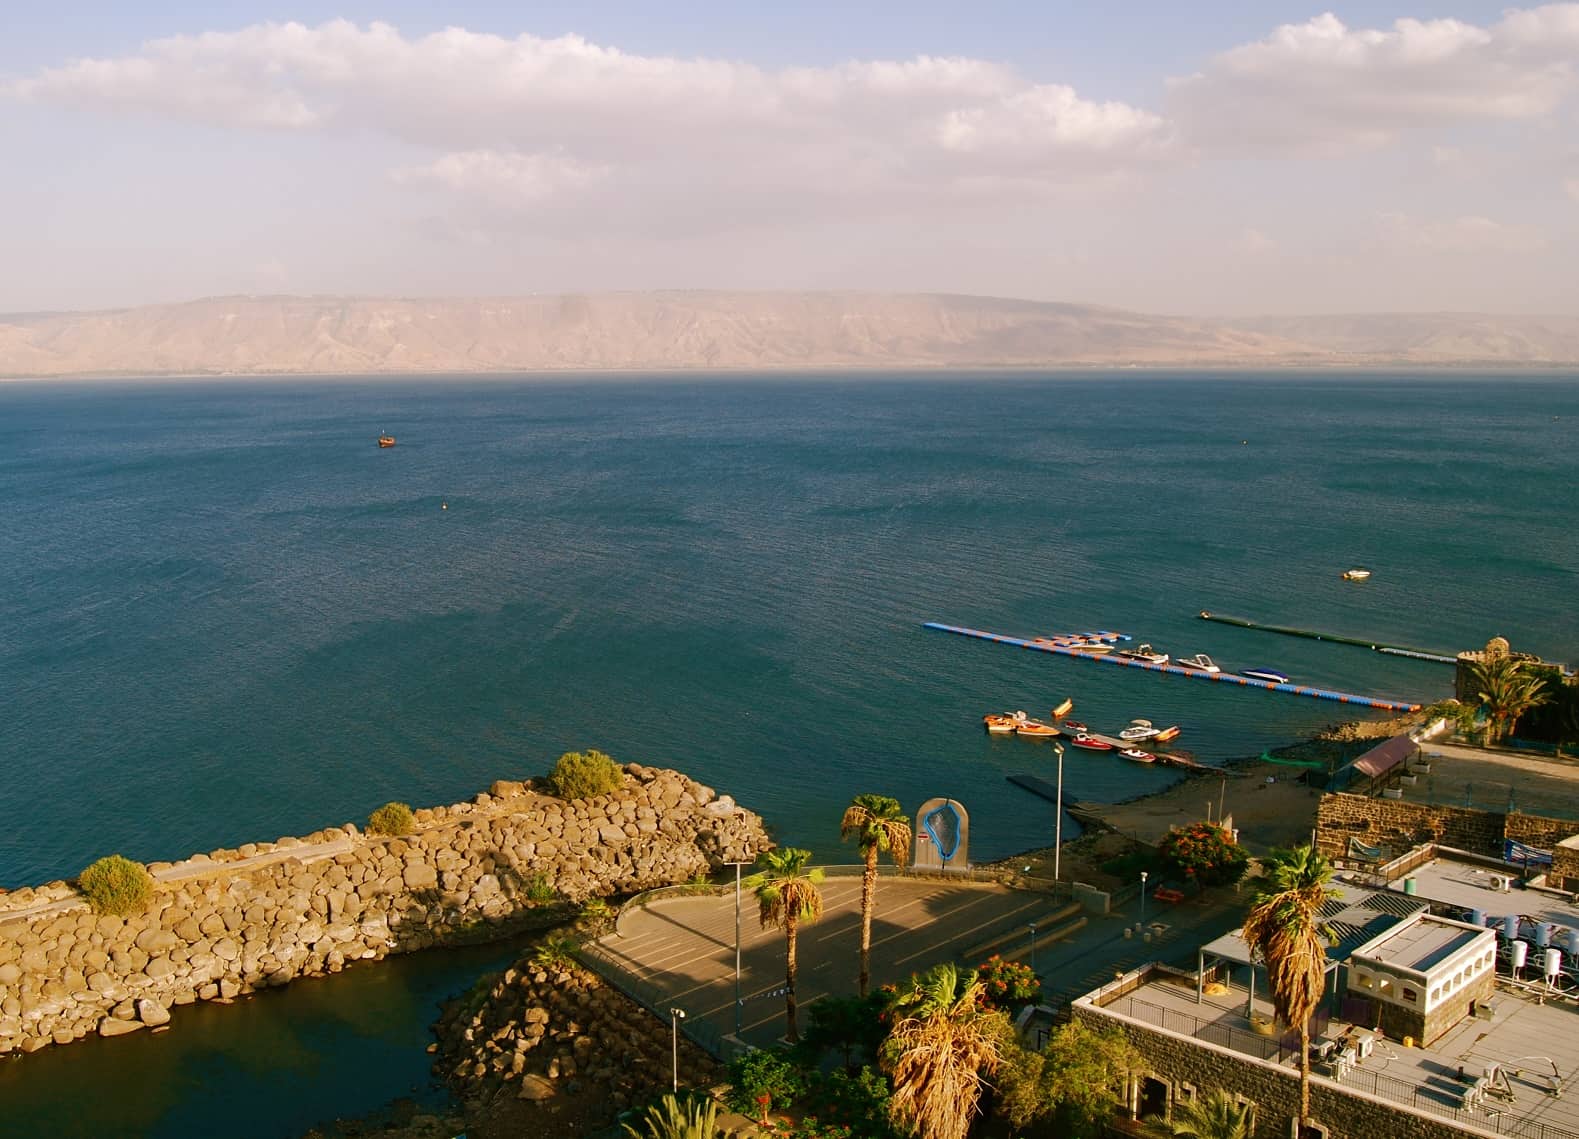  Biển hồ Galilê - Tour du lịch Israel